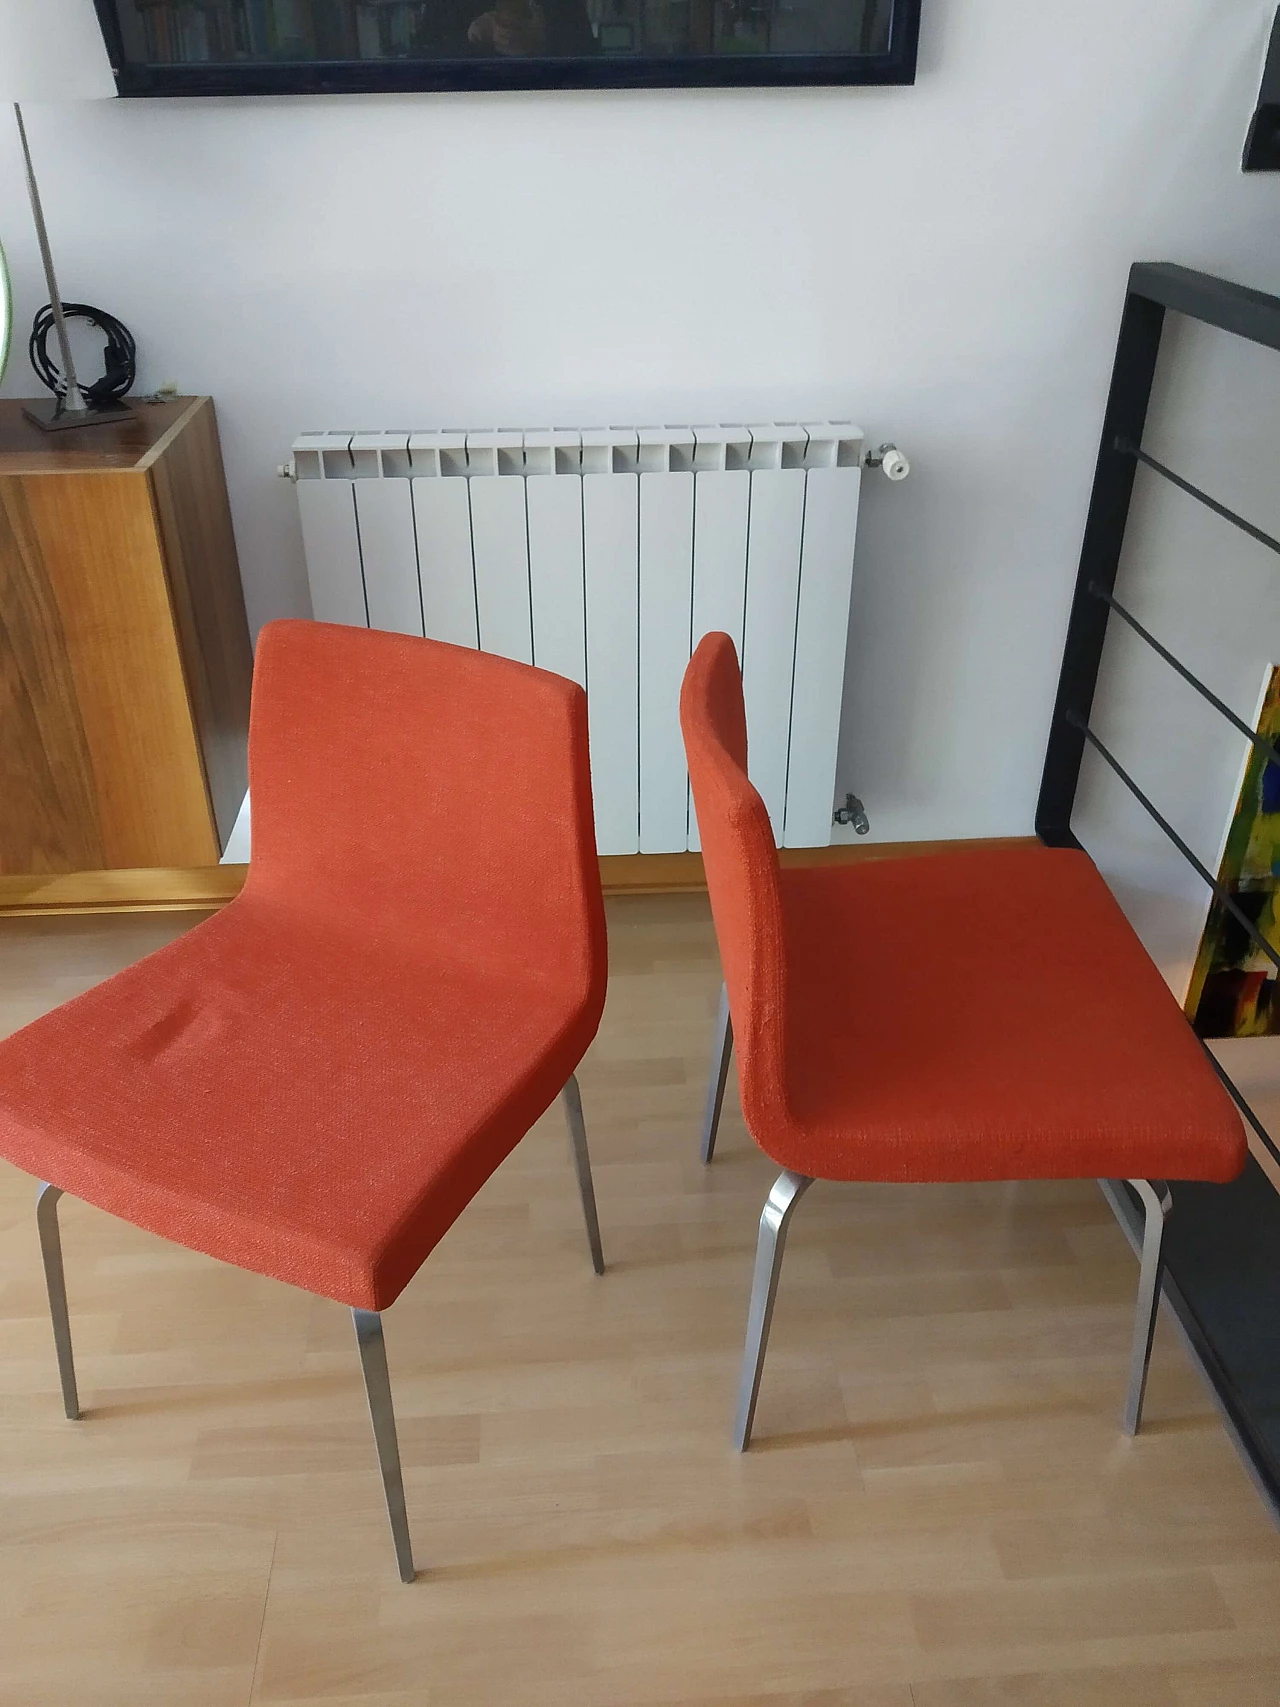 4 Hella Chairs by Mauro Lipparini for MisuraEmme 1477296